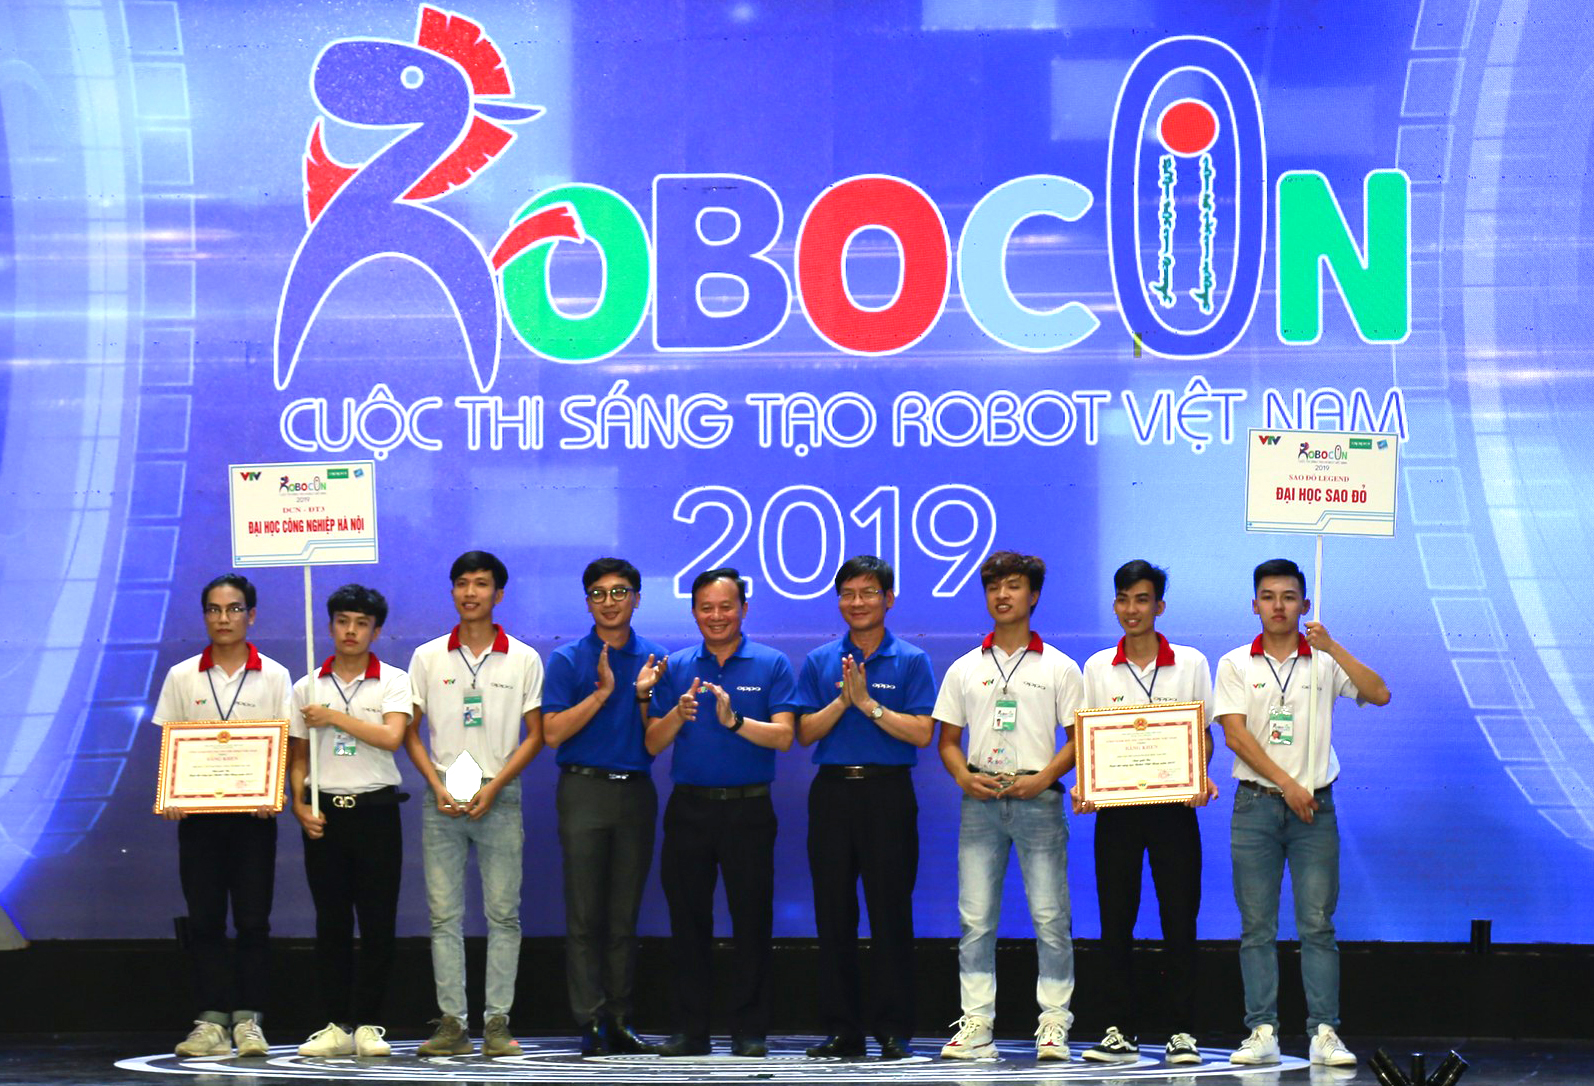 Đại học Công nghiệp Hà Nội giành giải Ba tại Cuộc thi Sáng tạo Robocon Việt Nam 2019